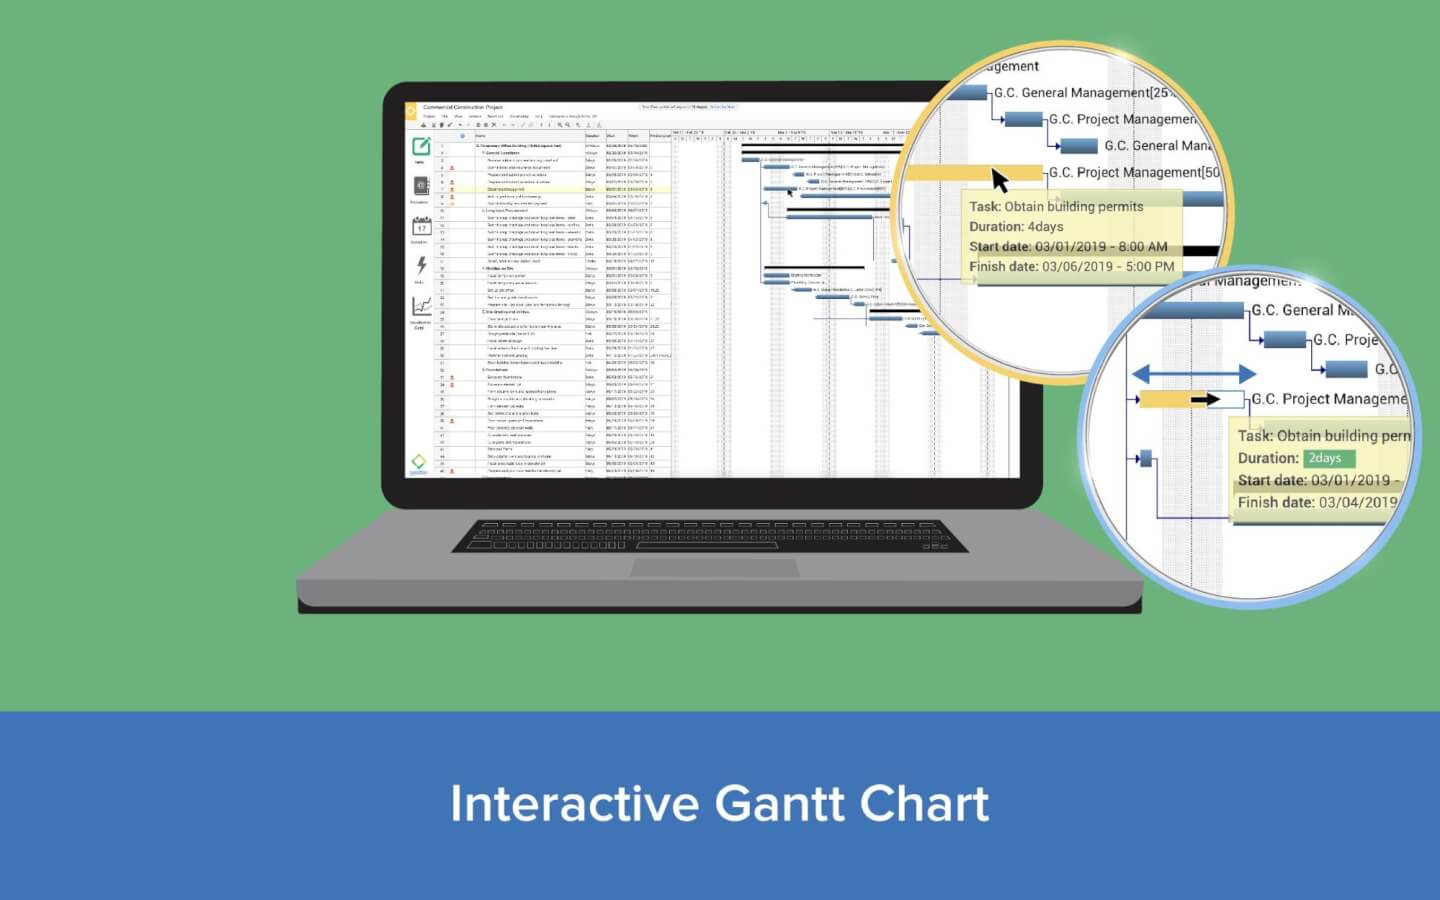 Interactive Gantt Chart iamge